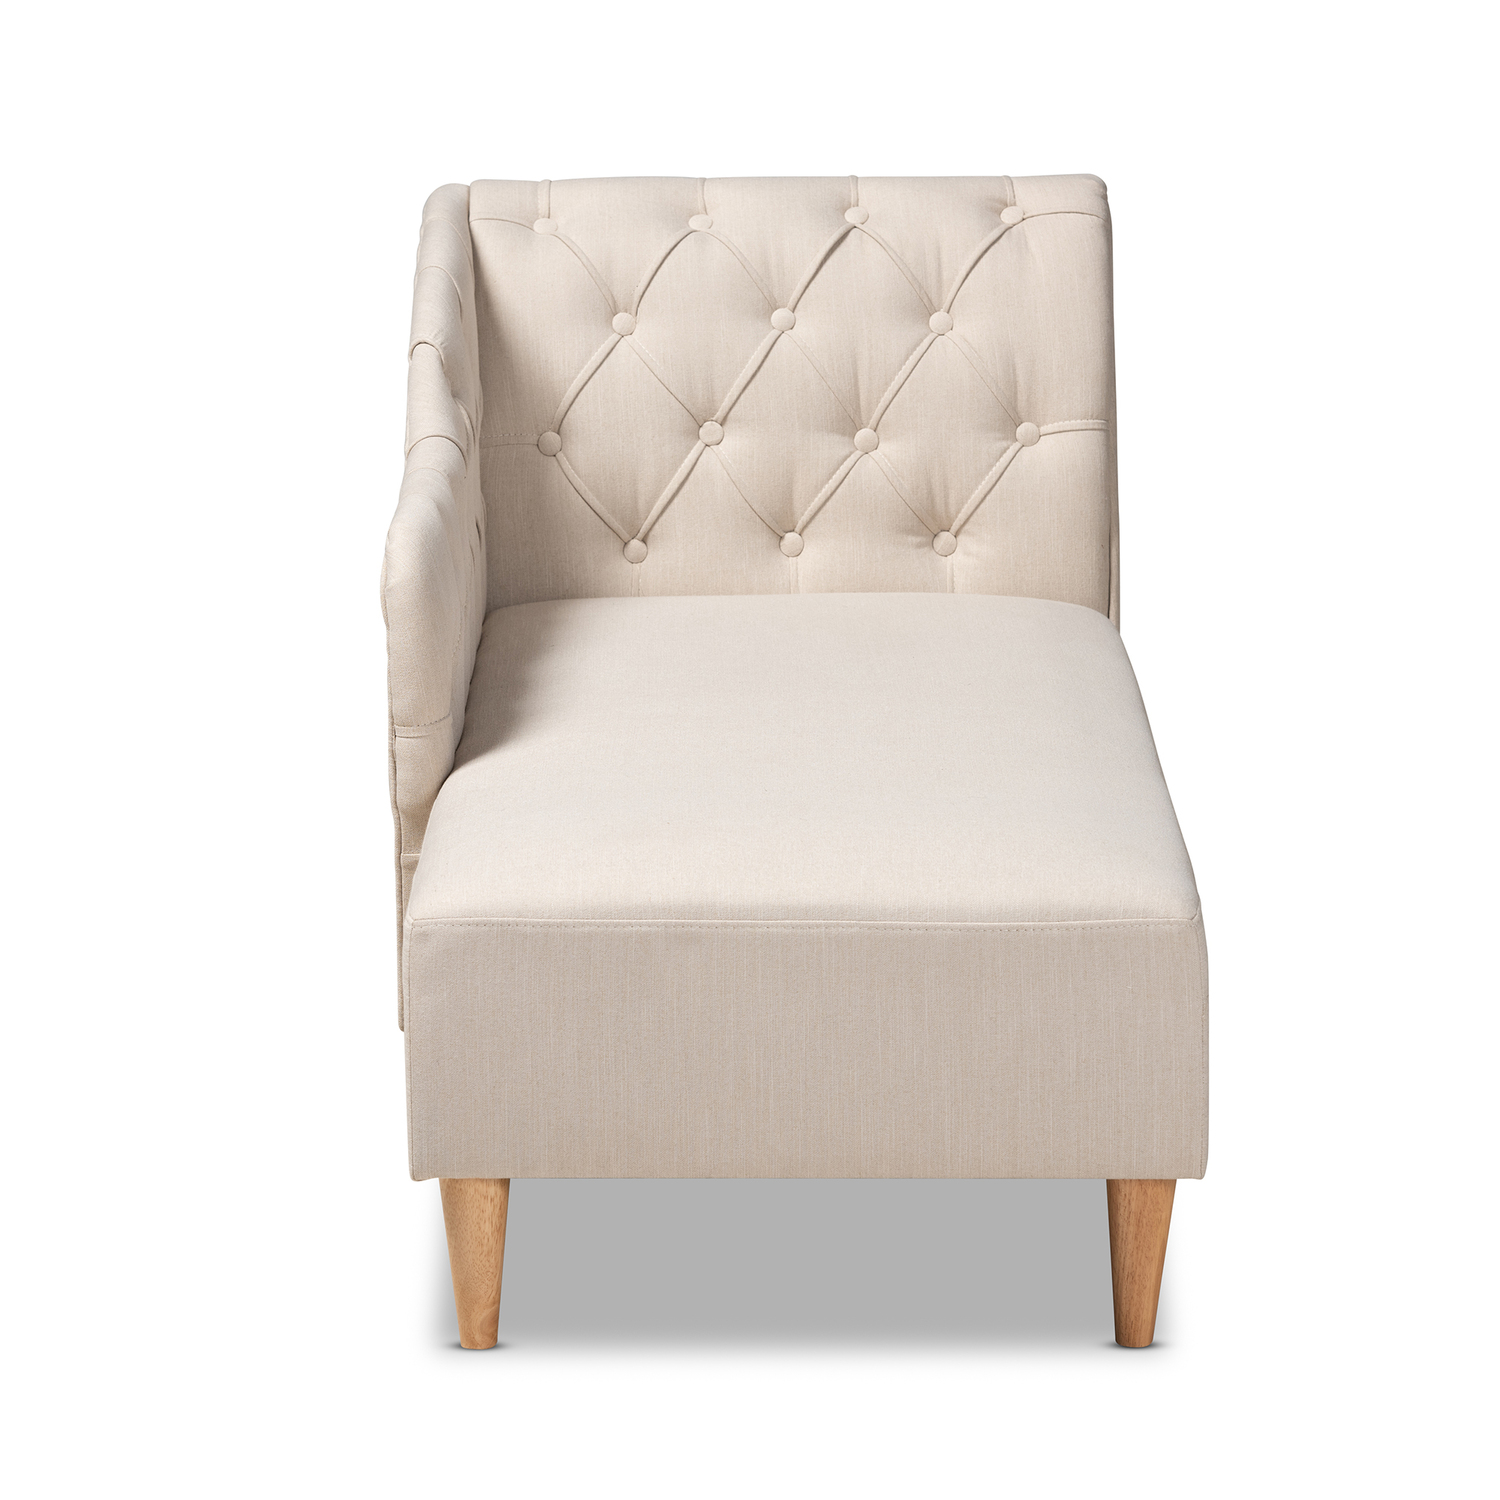 Baxton Studio Emeline Beige Upholstered Oak Finished Chaise Lounge - image 4 of 9